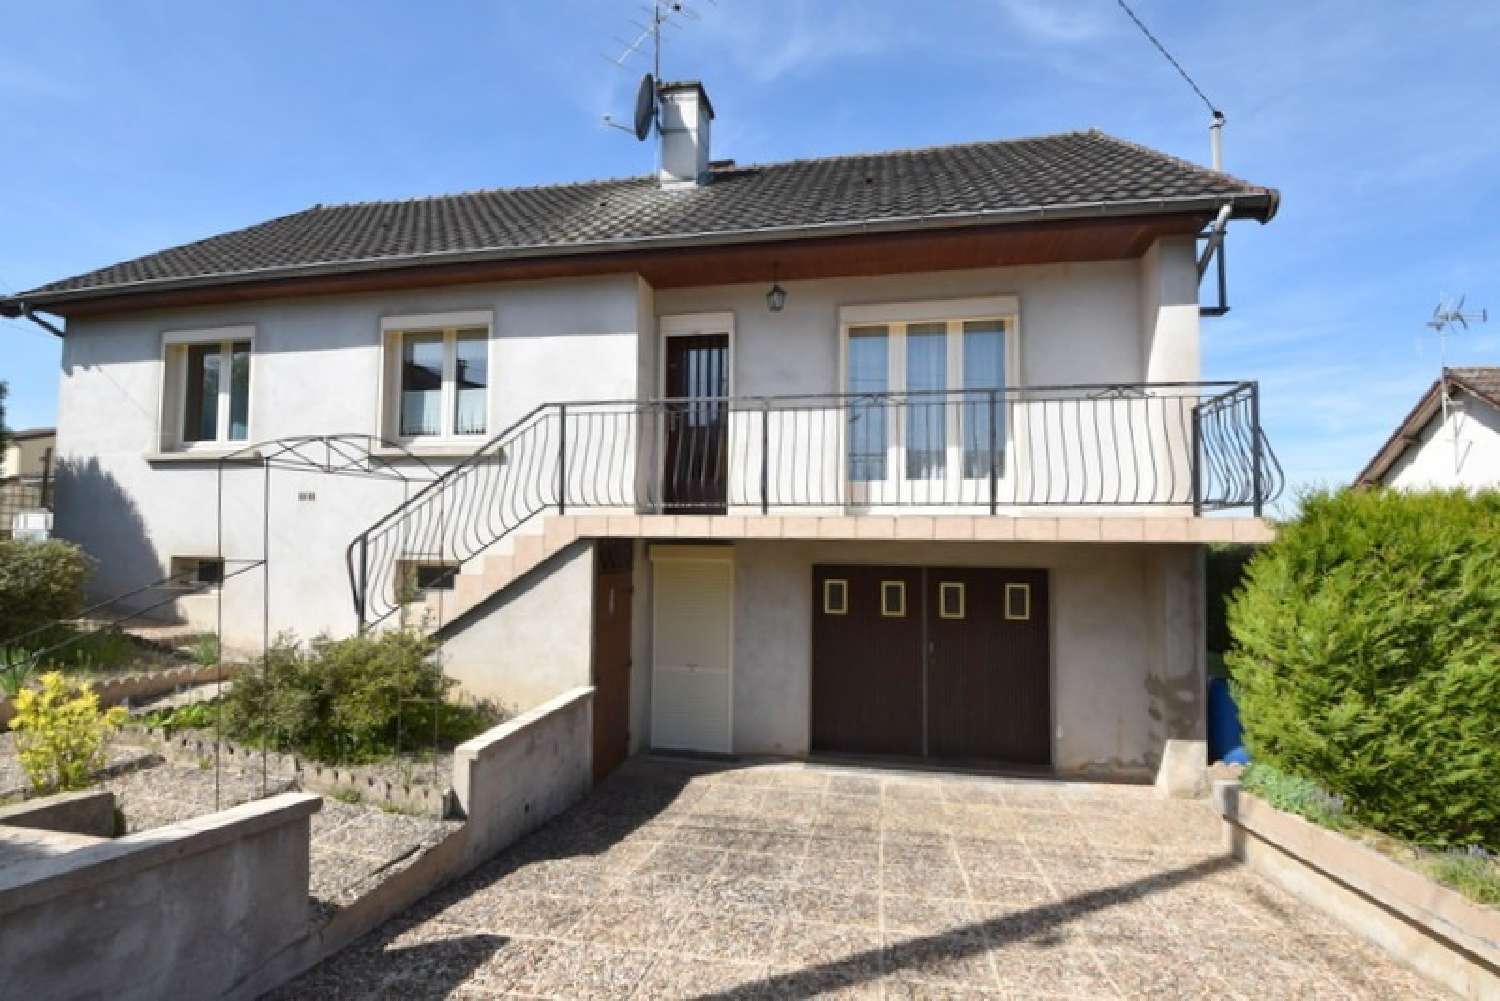  à vendre maison Gueugnon Saône-et-Loire 1